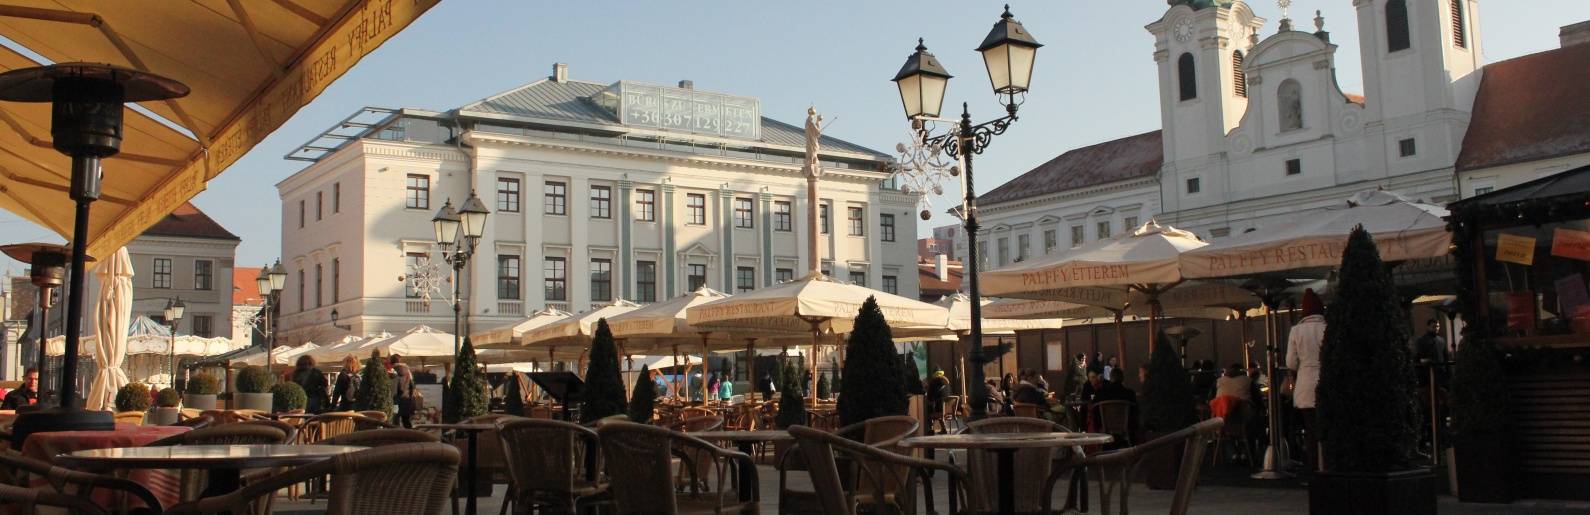 Győr a találkozások városa